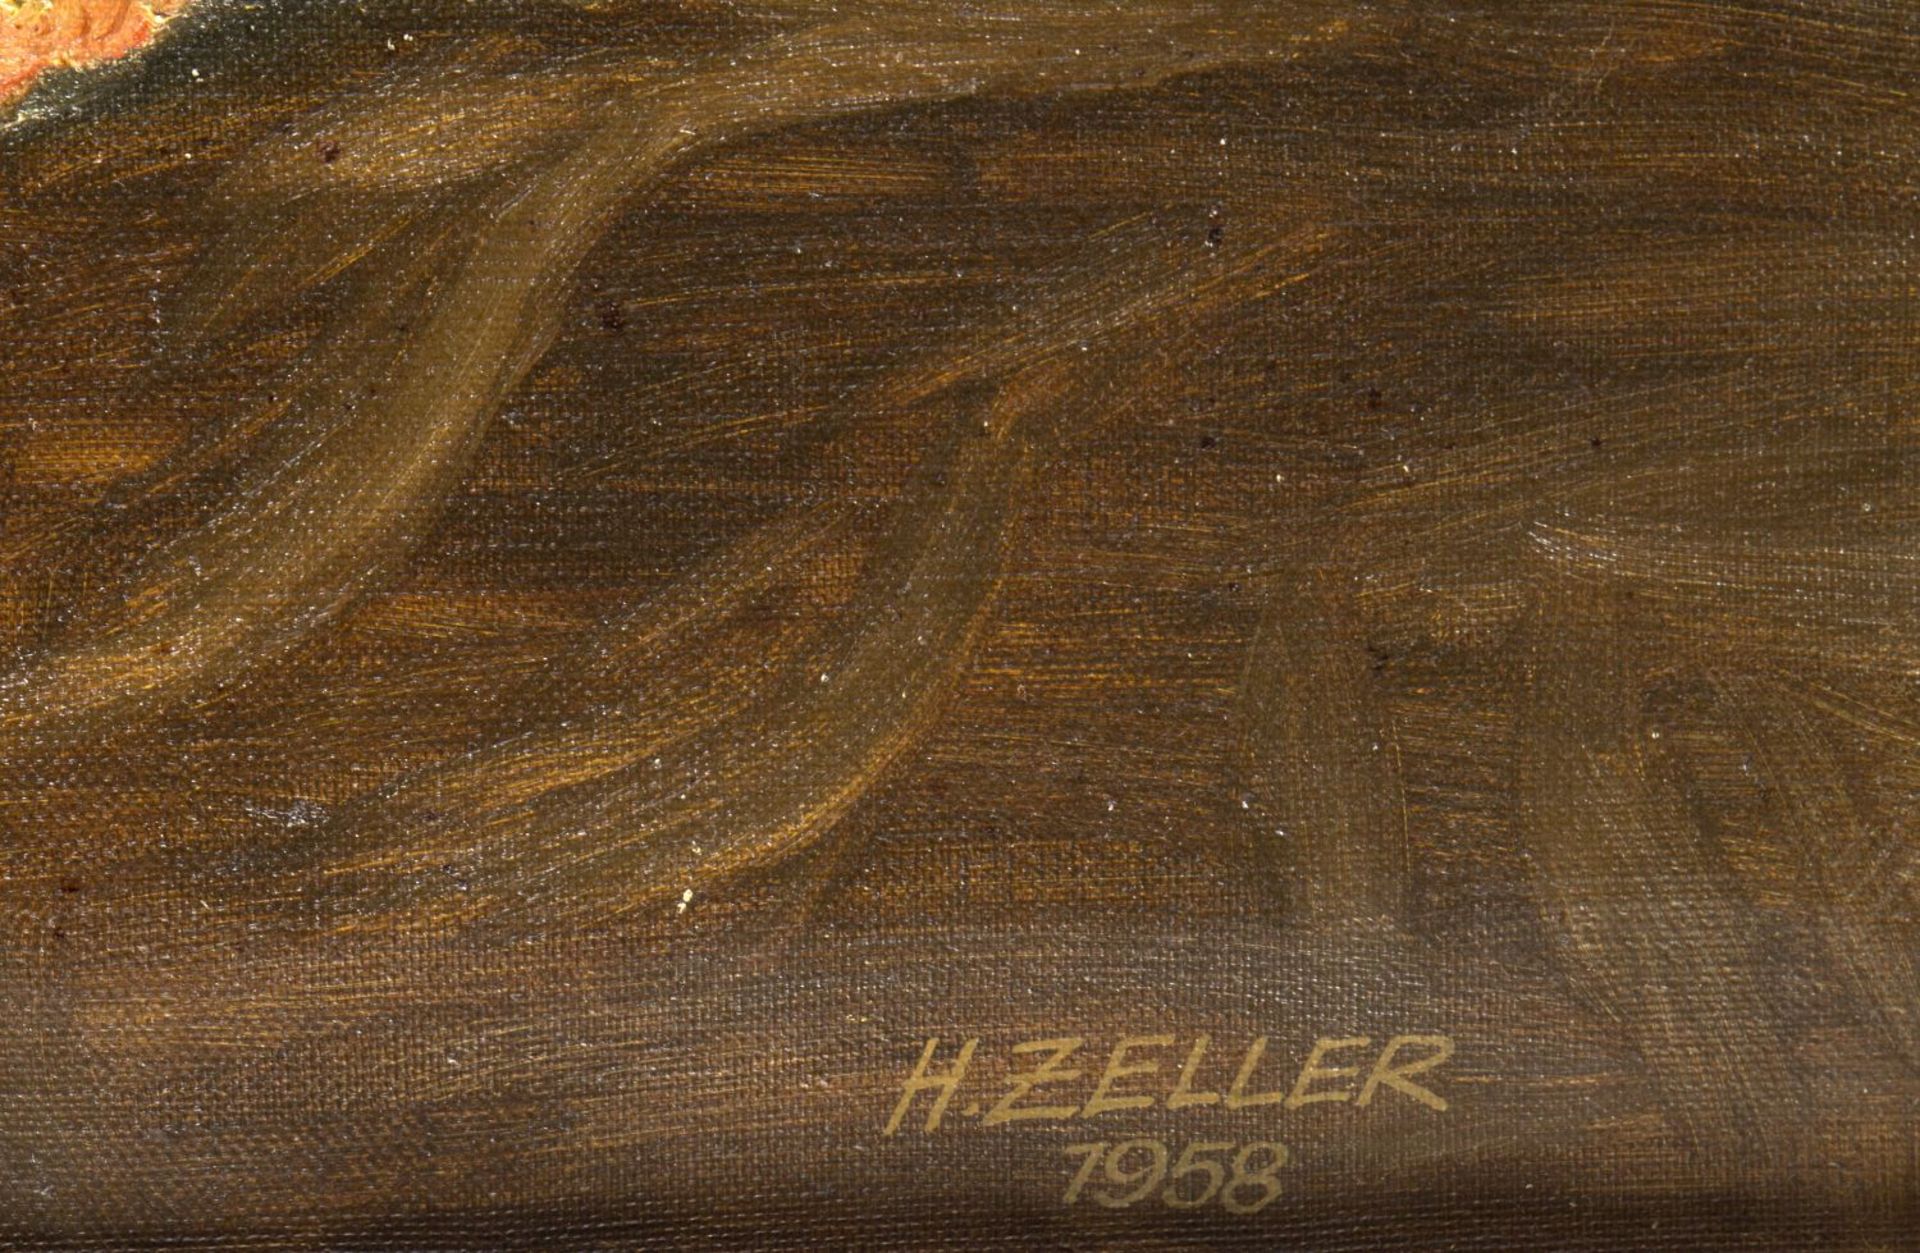 Zeller, H.Stillleben mit Rosen. Öl/Lwd. Sign. und dat. 1958. 60 x 50 cm. Gerahmt. - Bild 2 aus 3